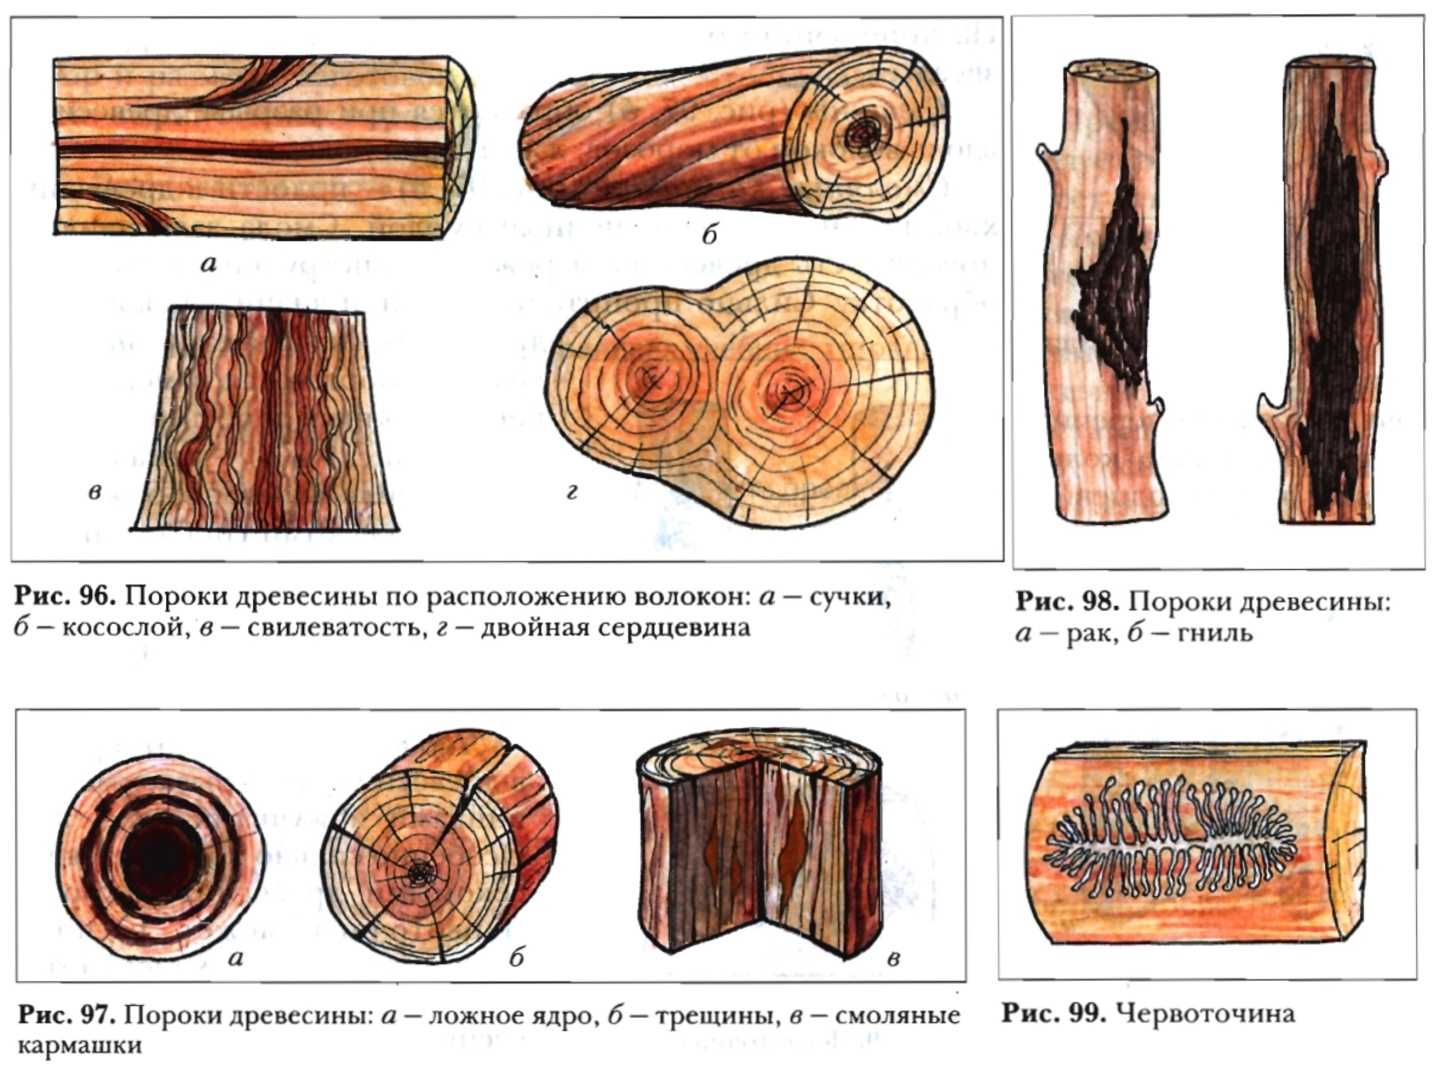 Пороки древесины заболонь